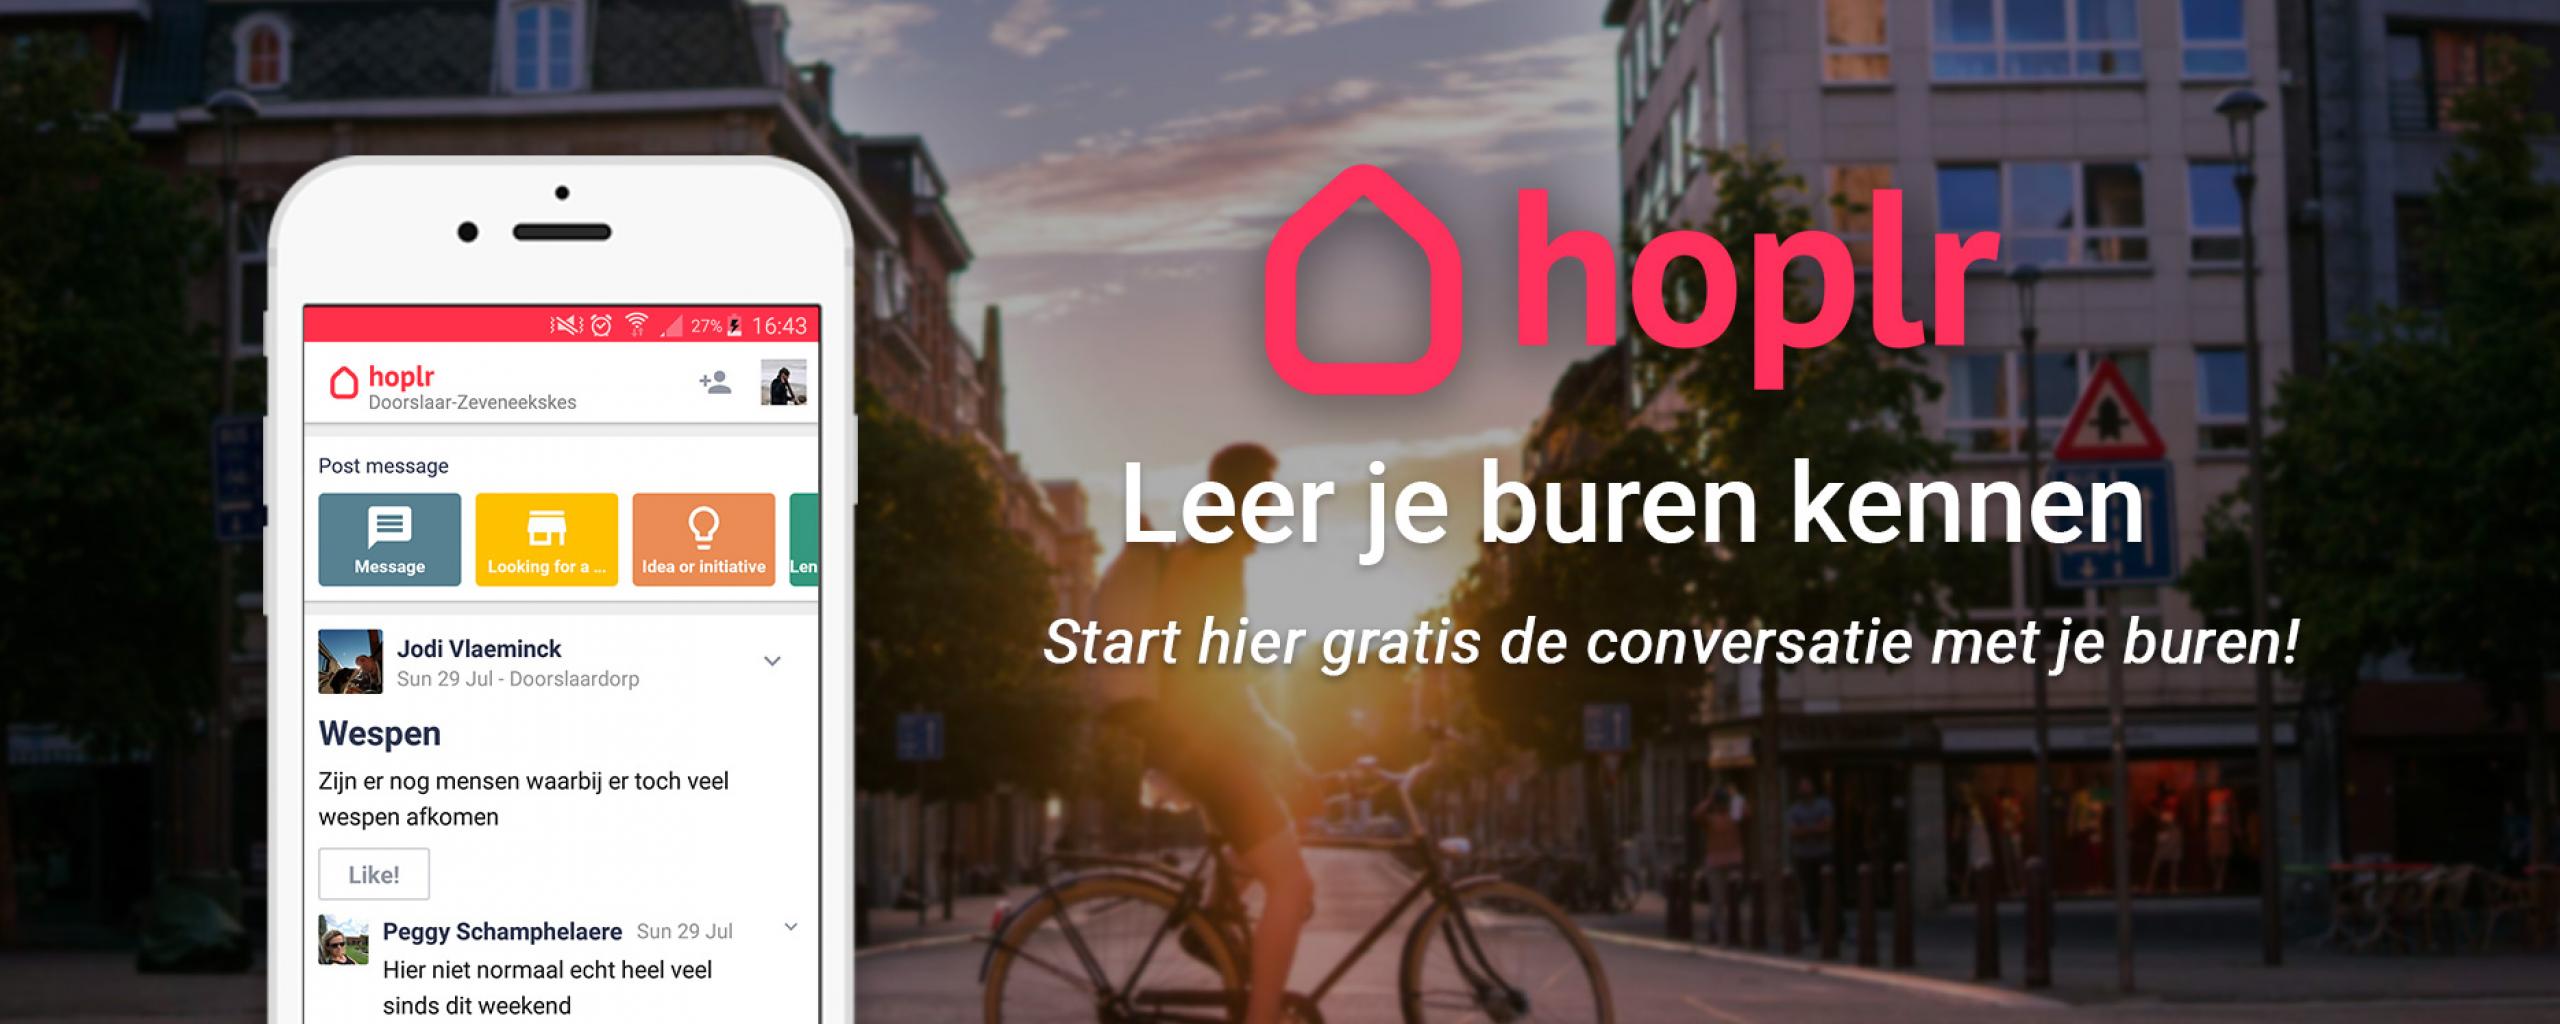 Foto waarop app van Hoplr wordt getoond op een smartphone